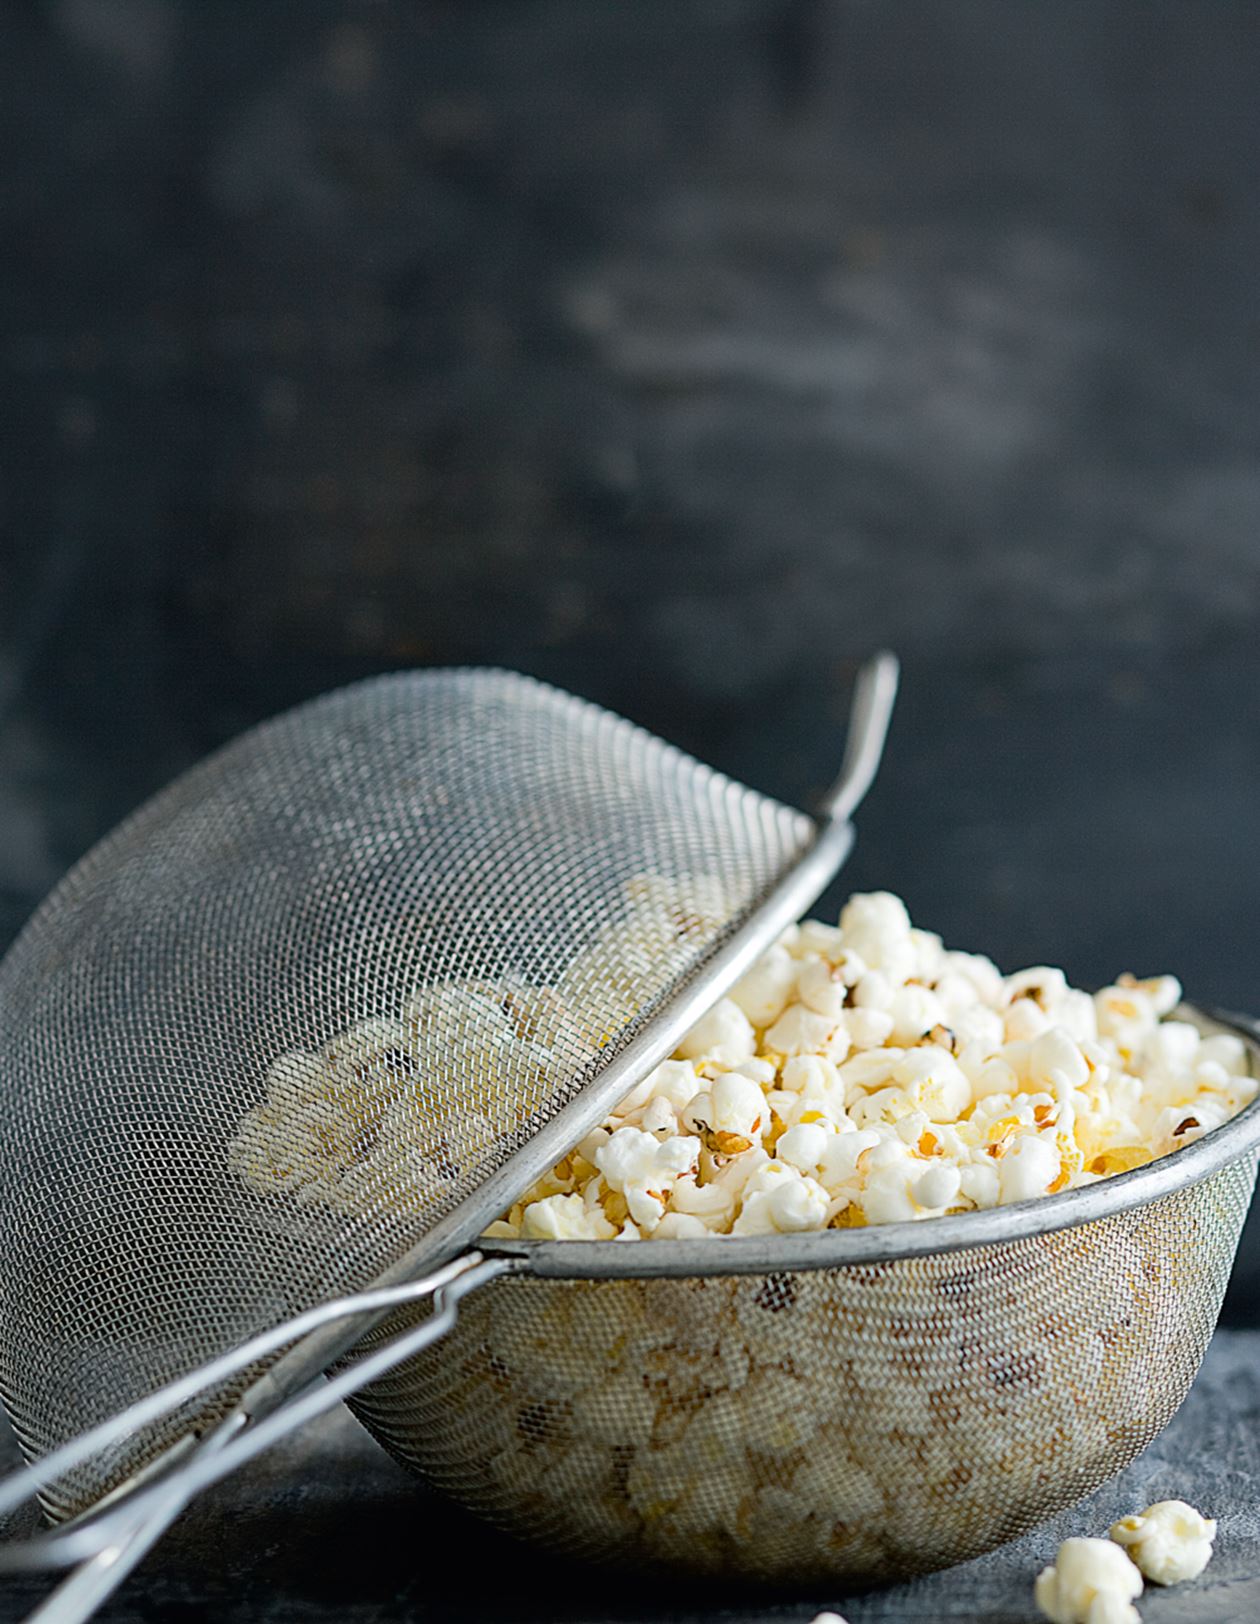 Popcorn over | dine egne popcorn over åben ild